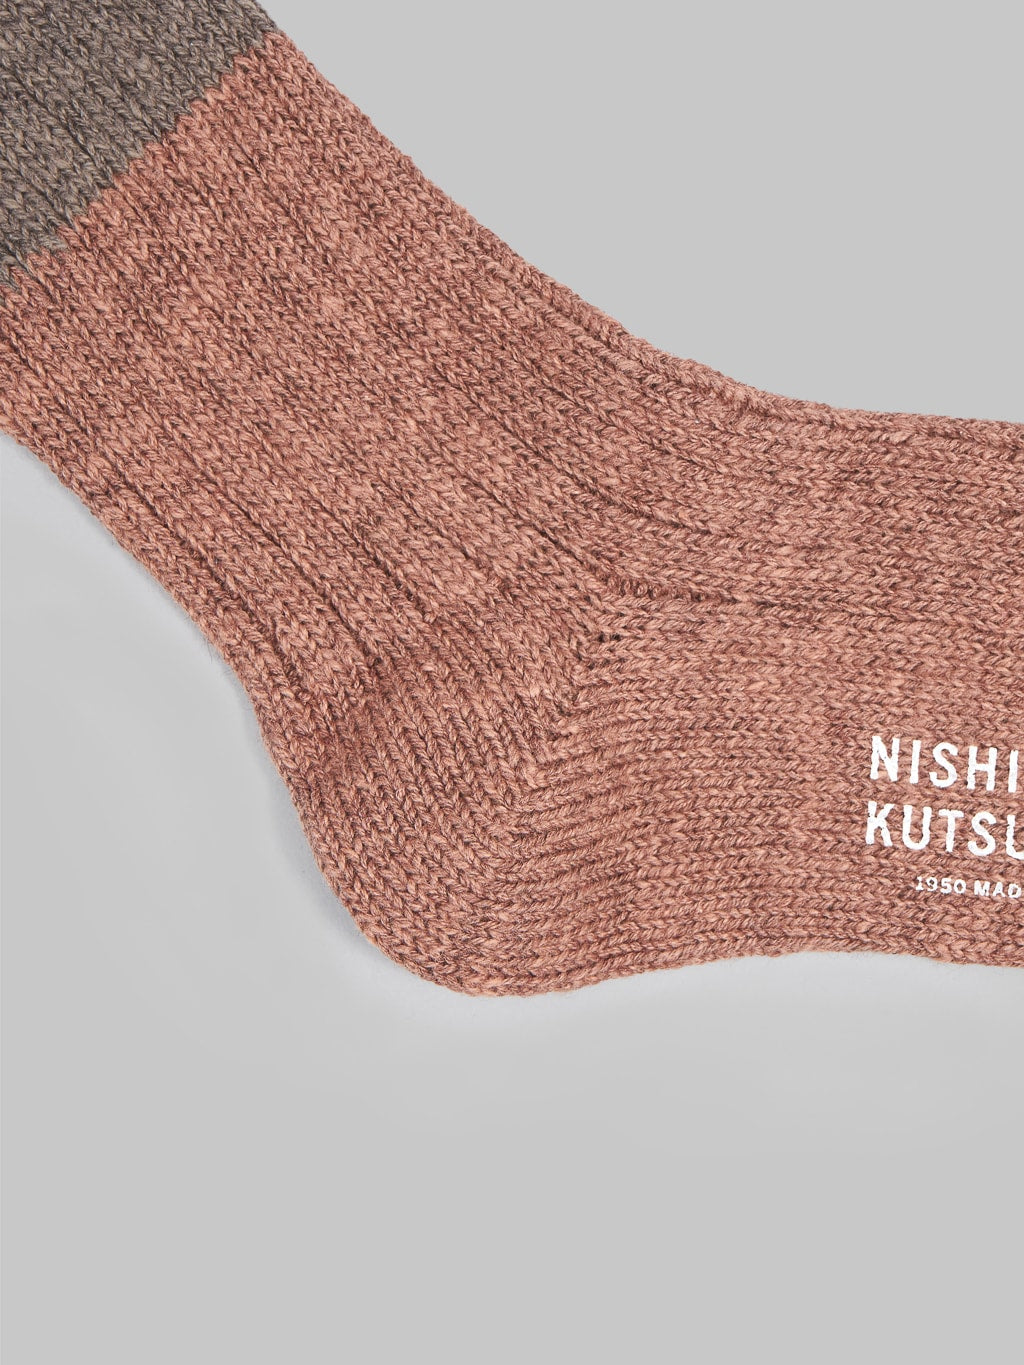 Nishiguchi Kutsushita Wool Cotton Slab Socks Brown Heel